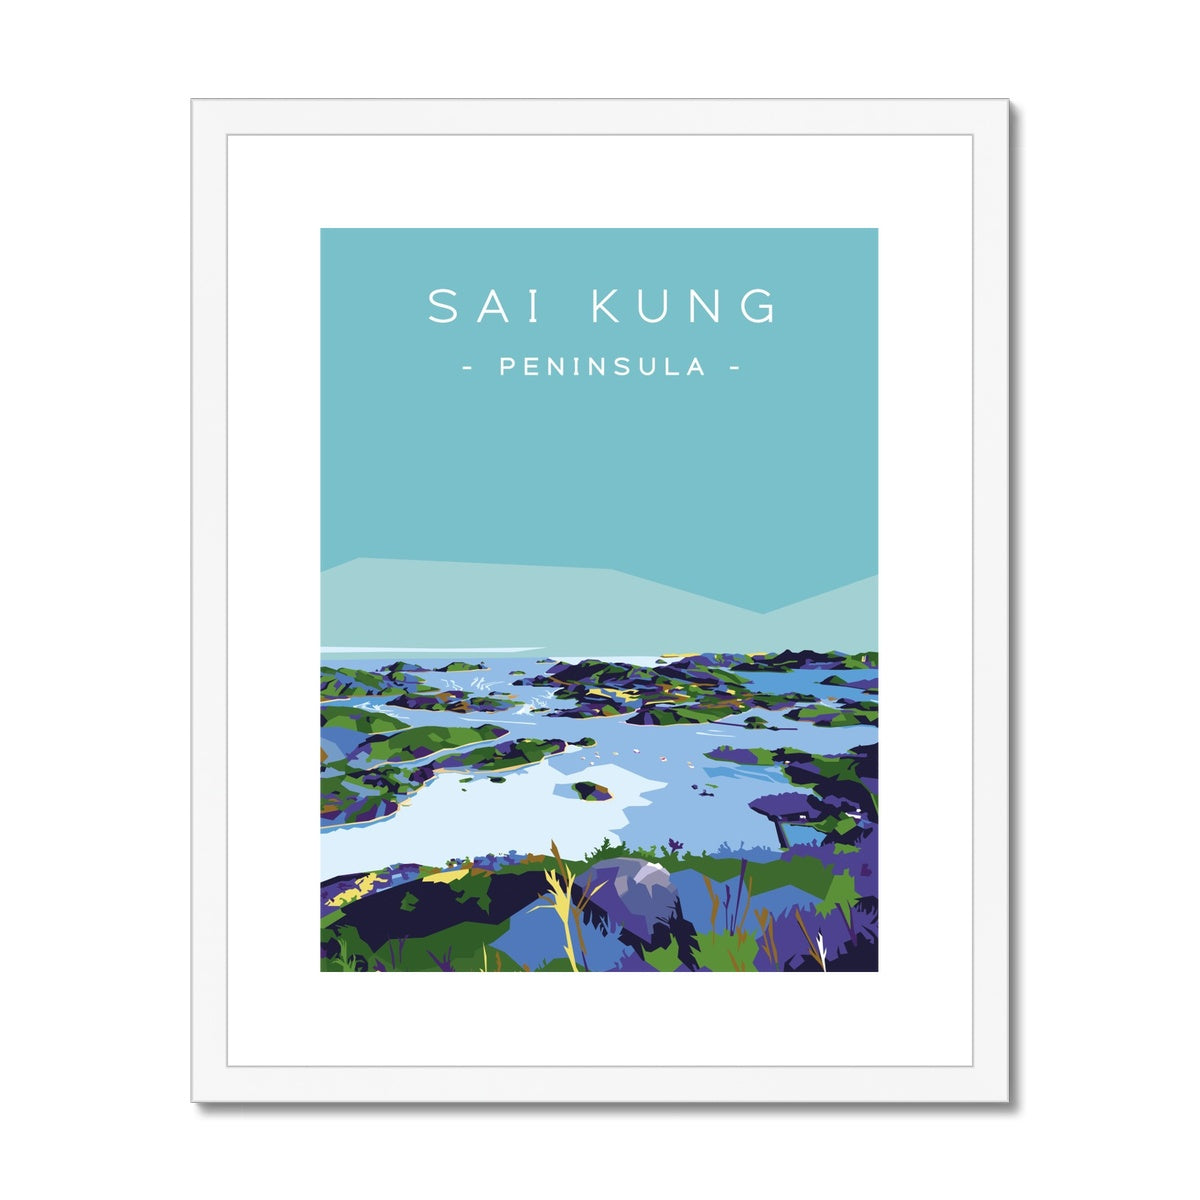 Hong Kong Travel - Sai Kung Peninsula Framed & Mounted Print